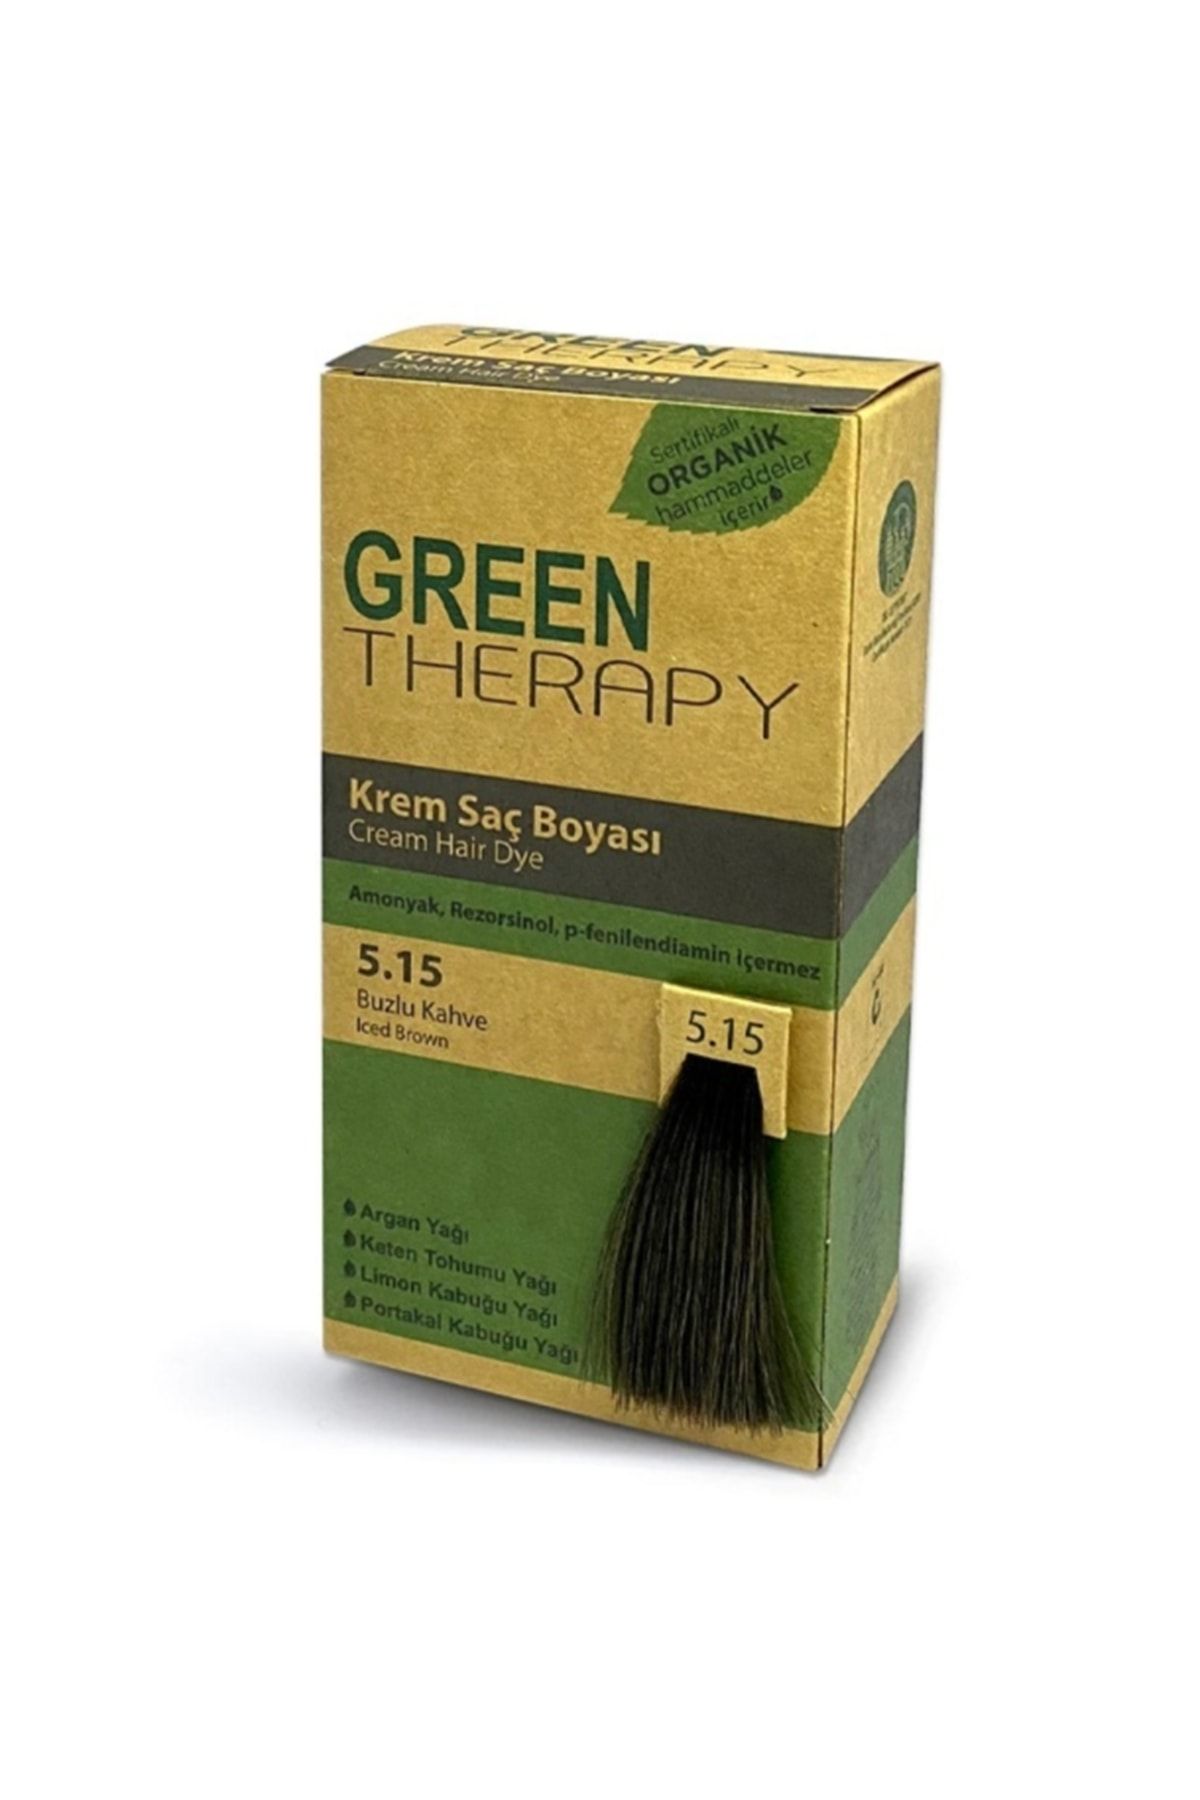 Green Therapy Krem Saç Boyası 5.15 Buzlu Kahve